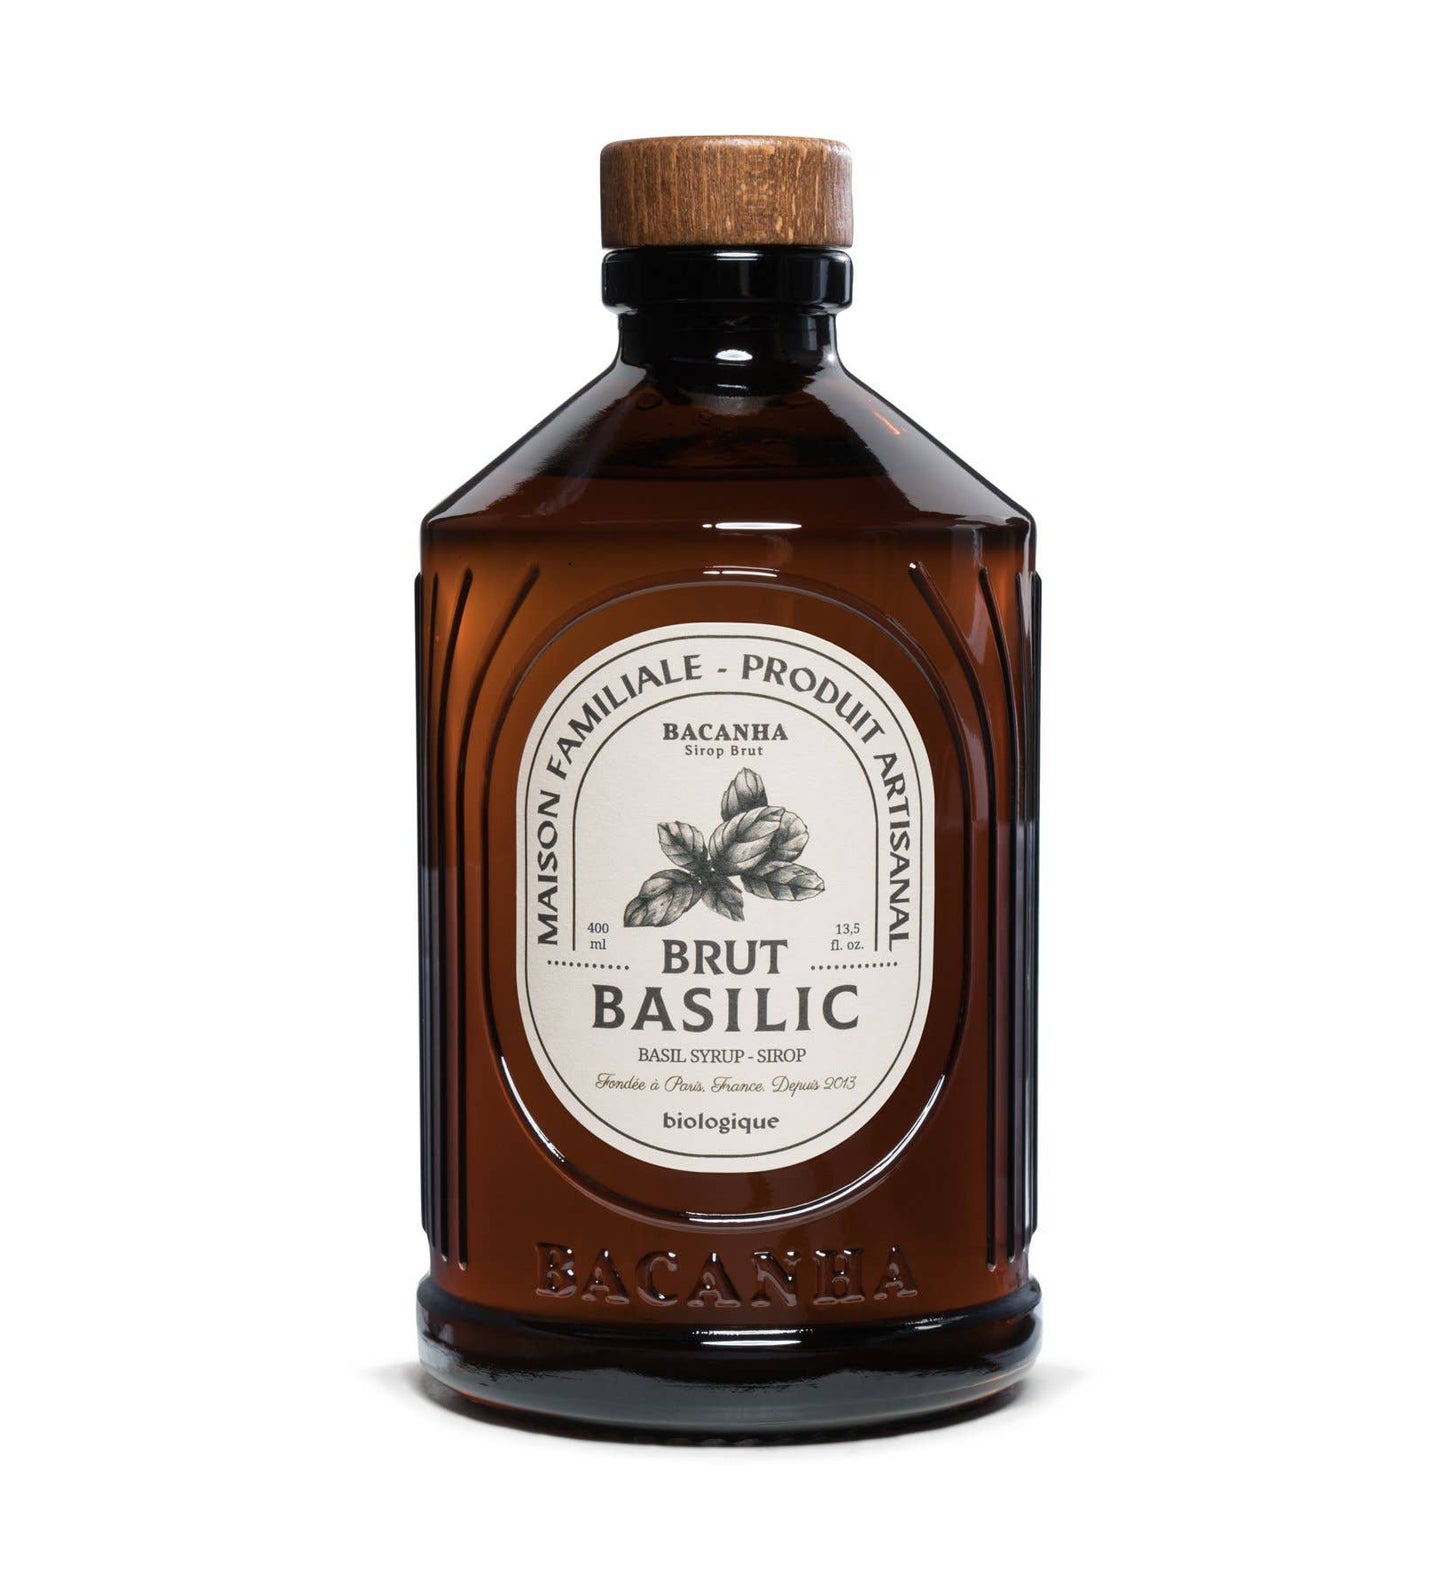 Raw Basil Syrup - Organic - 400ml - 13,5 fl. oz.